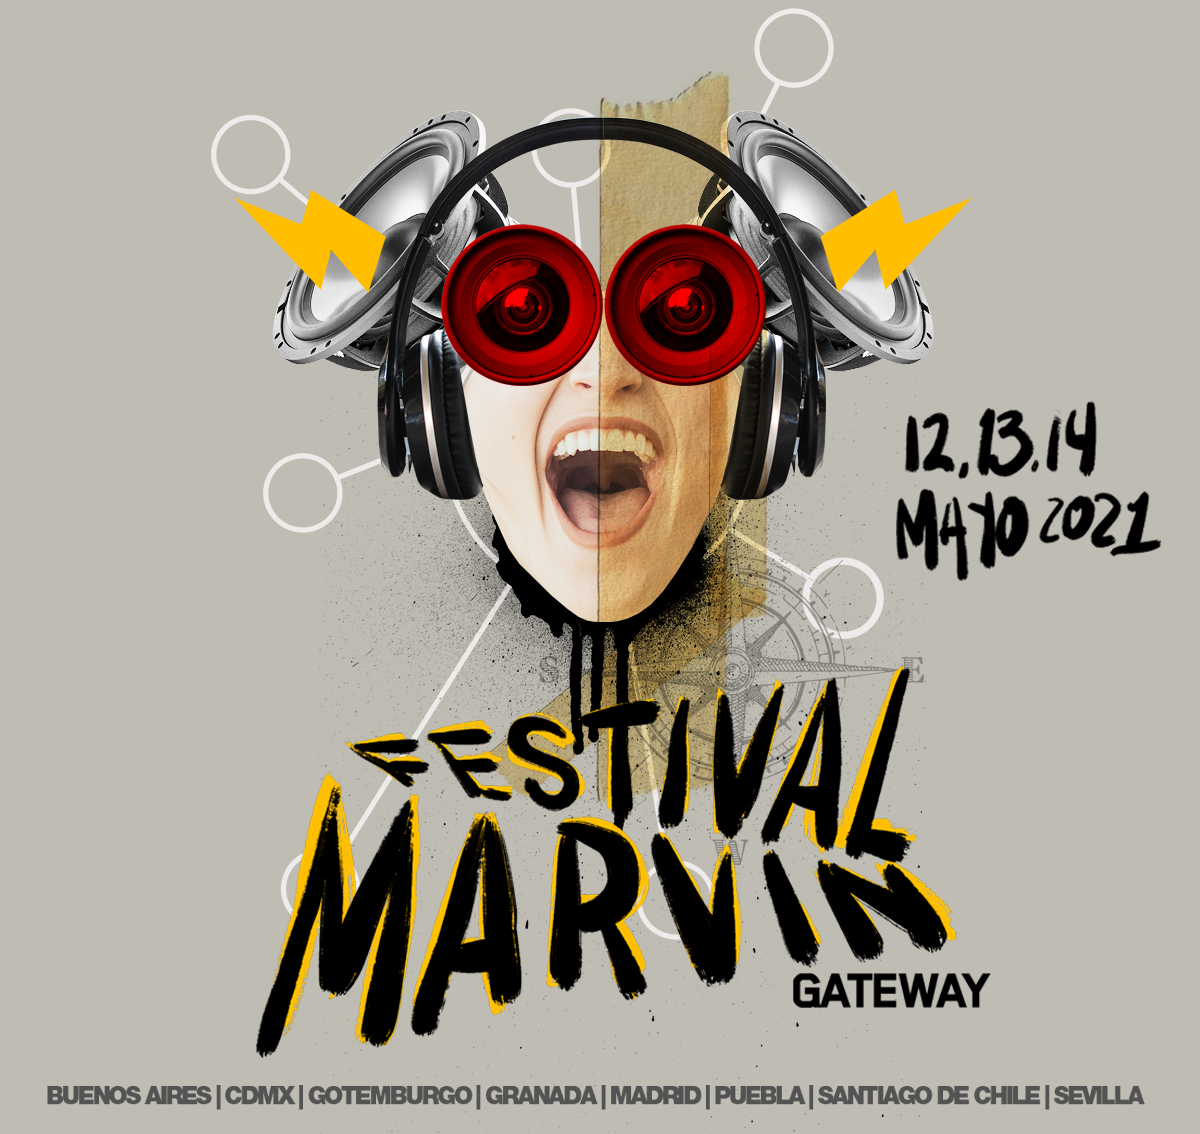 No te pierdas el Festival Marvin Gateway 2021 vía streaming este 12, 13 y 14 de mayo